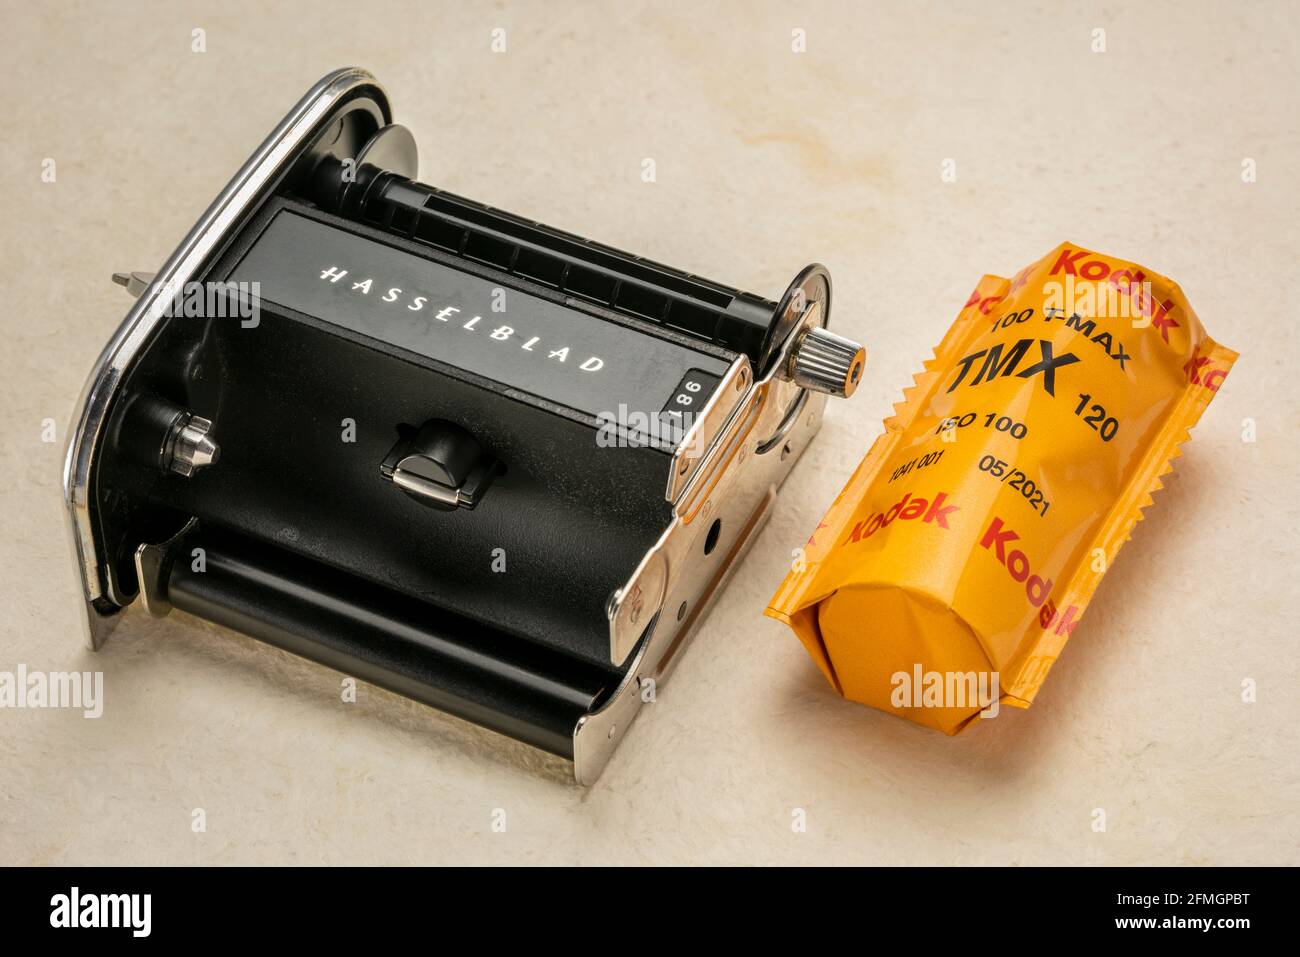 Fort Collins, CO, États-Unis - 10 juillet 2020 : dos de film (insert) d'un appareil photo de format moyen vintage Hasselblad avec un rouleau de 120 Kodak T-max noir et blanc Banque D'Images